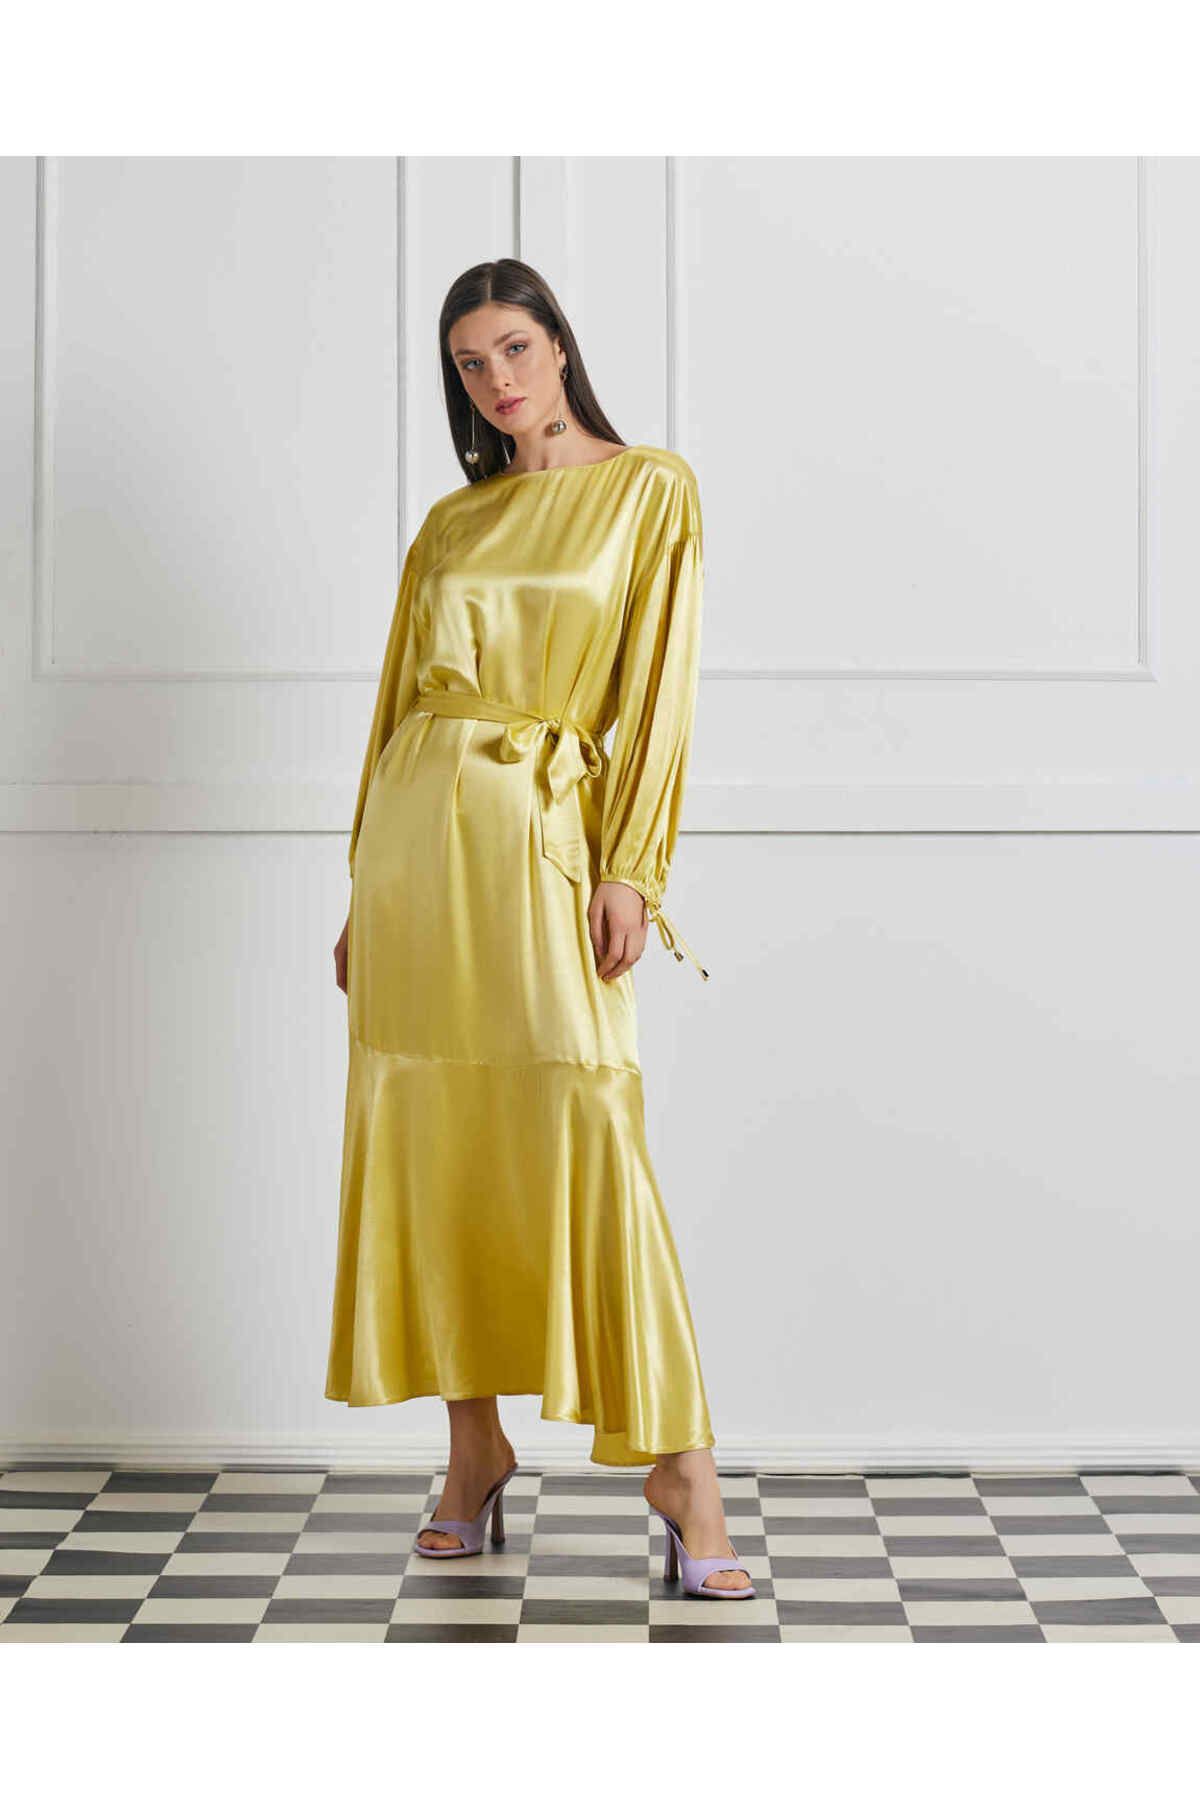 Serpil Serpil Kadın Sarı Elbise 34064